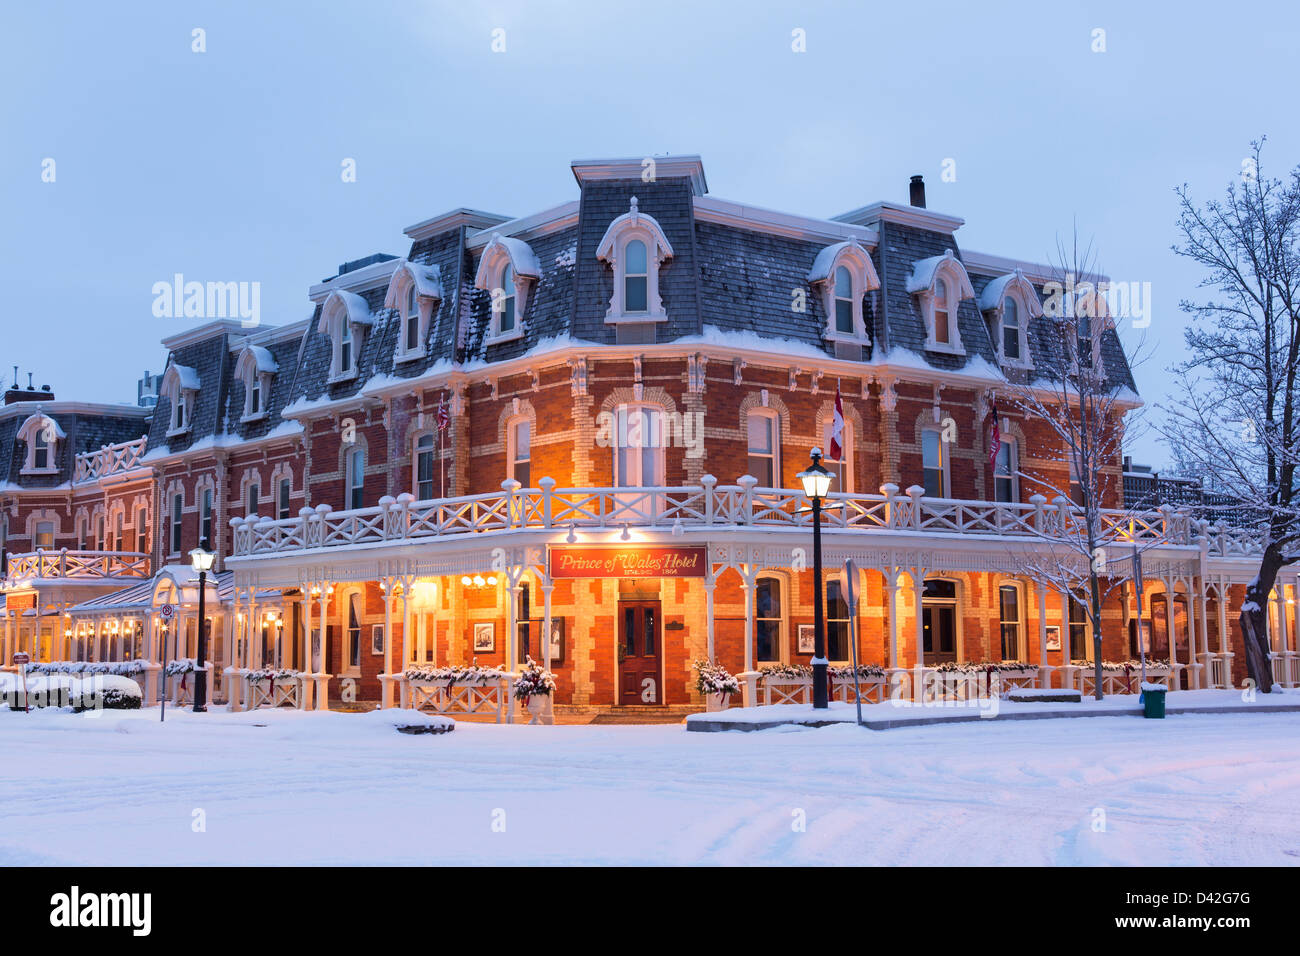 Kanada, Ontario, Niagara-on-the-Lake, Prince of Wales Hotel in einer winterlichen Umgebung. Niagara ist ein kulturelles und kulturelles Ziel. Stockfoto